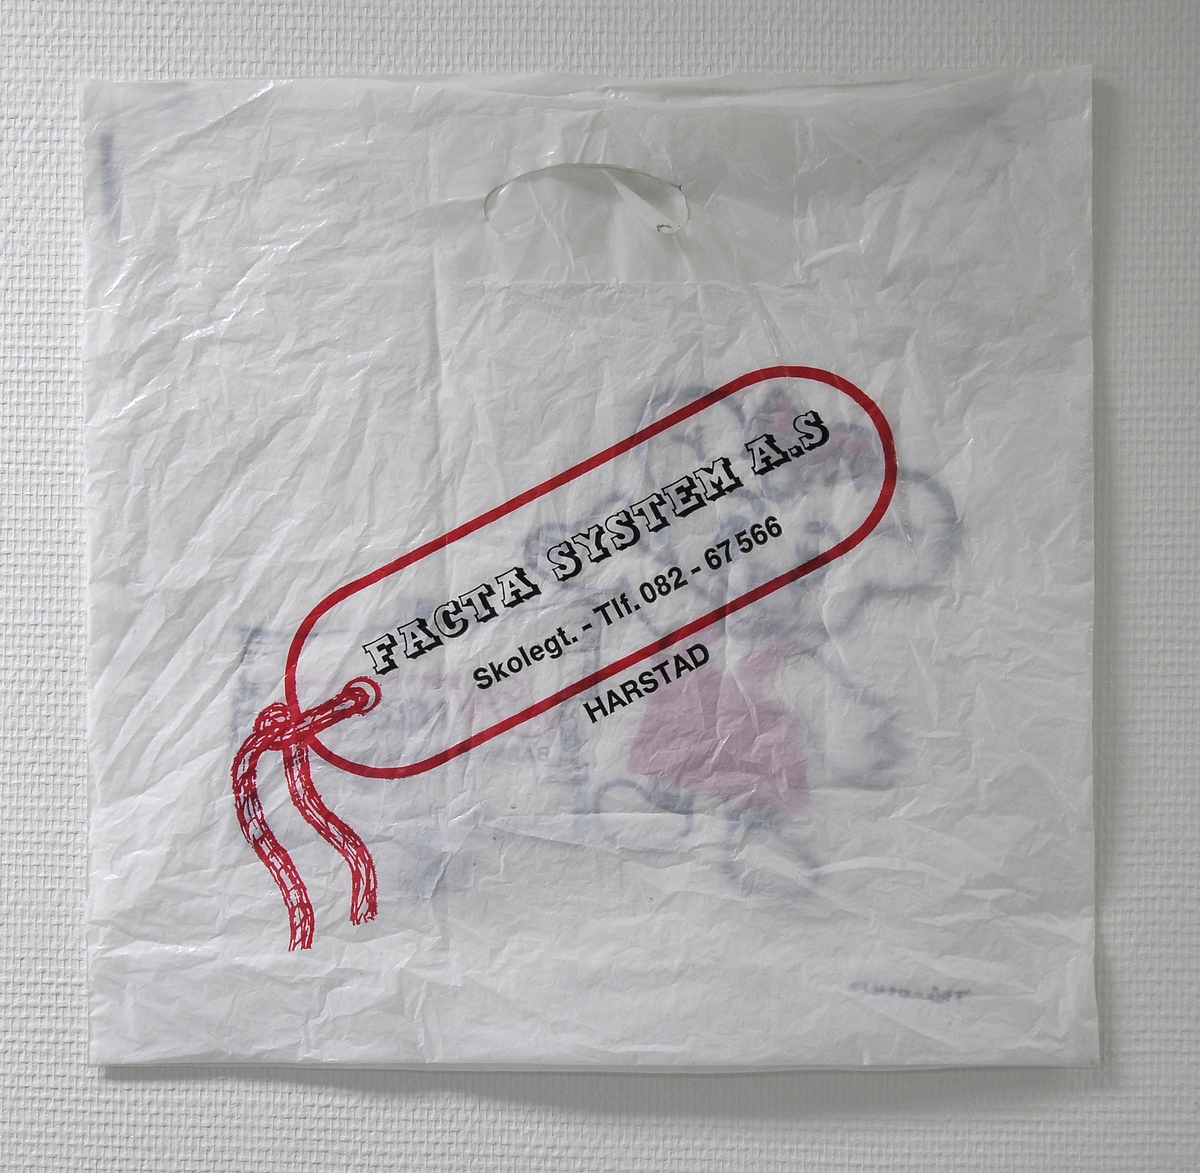 Plastpose fra Nina's barneklesspesialisten, forretning i Harstad